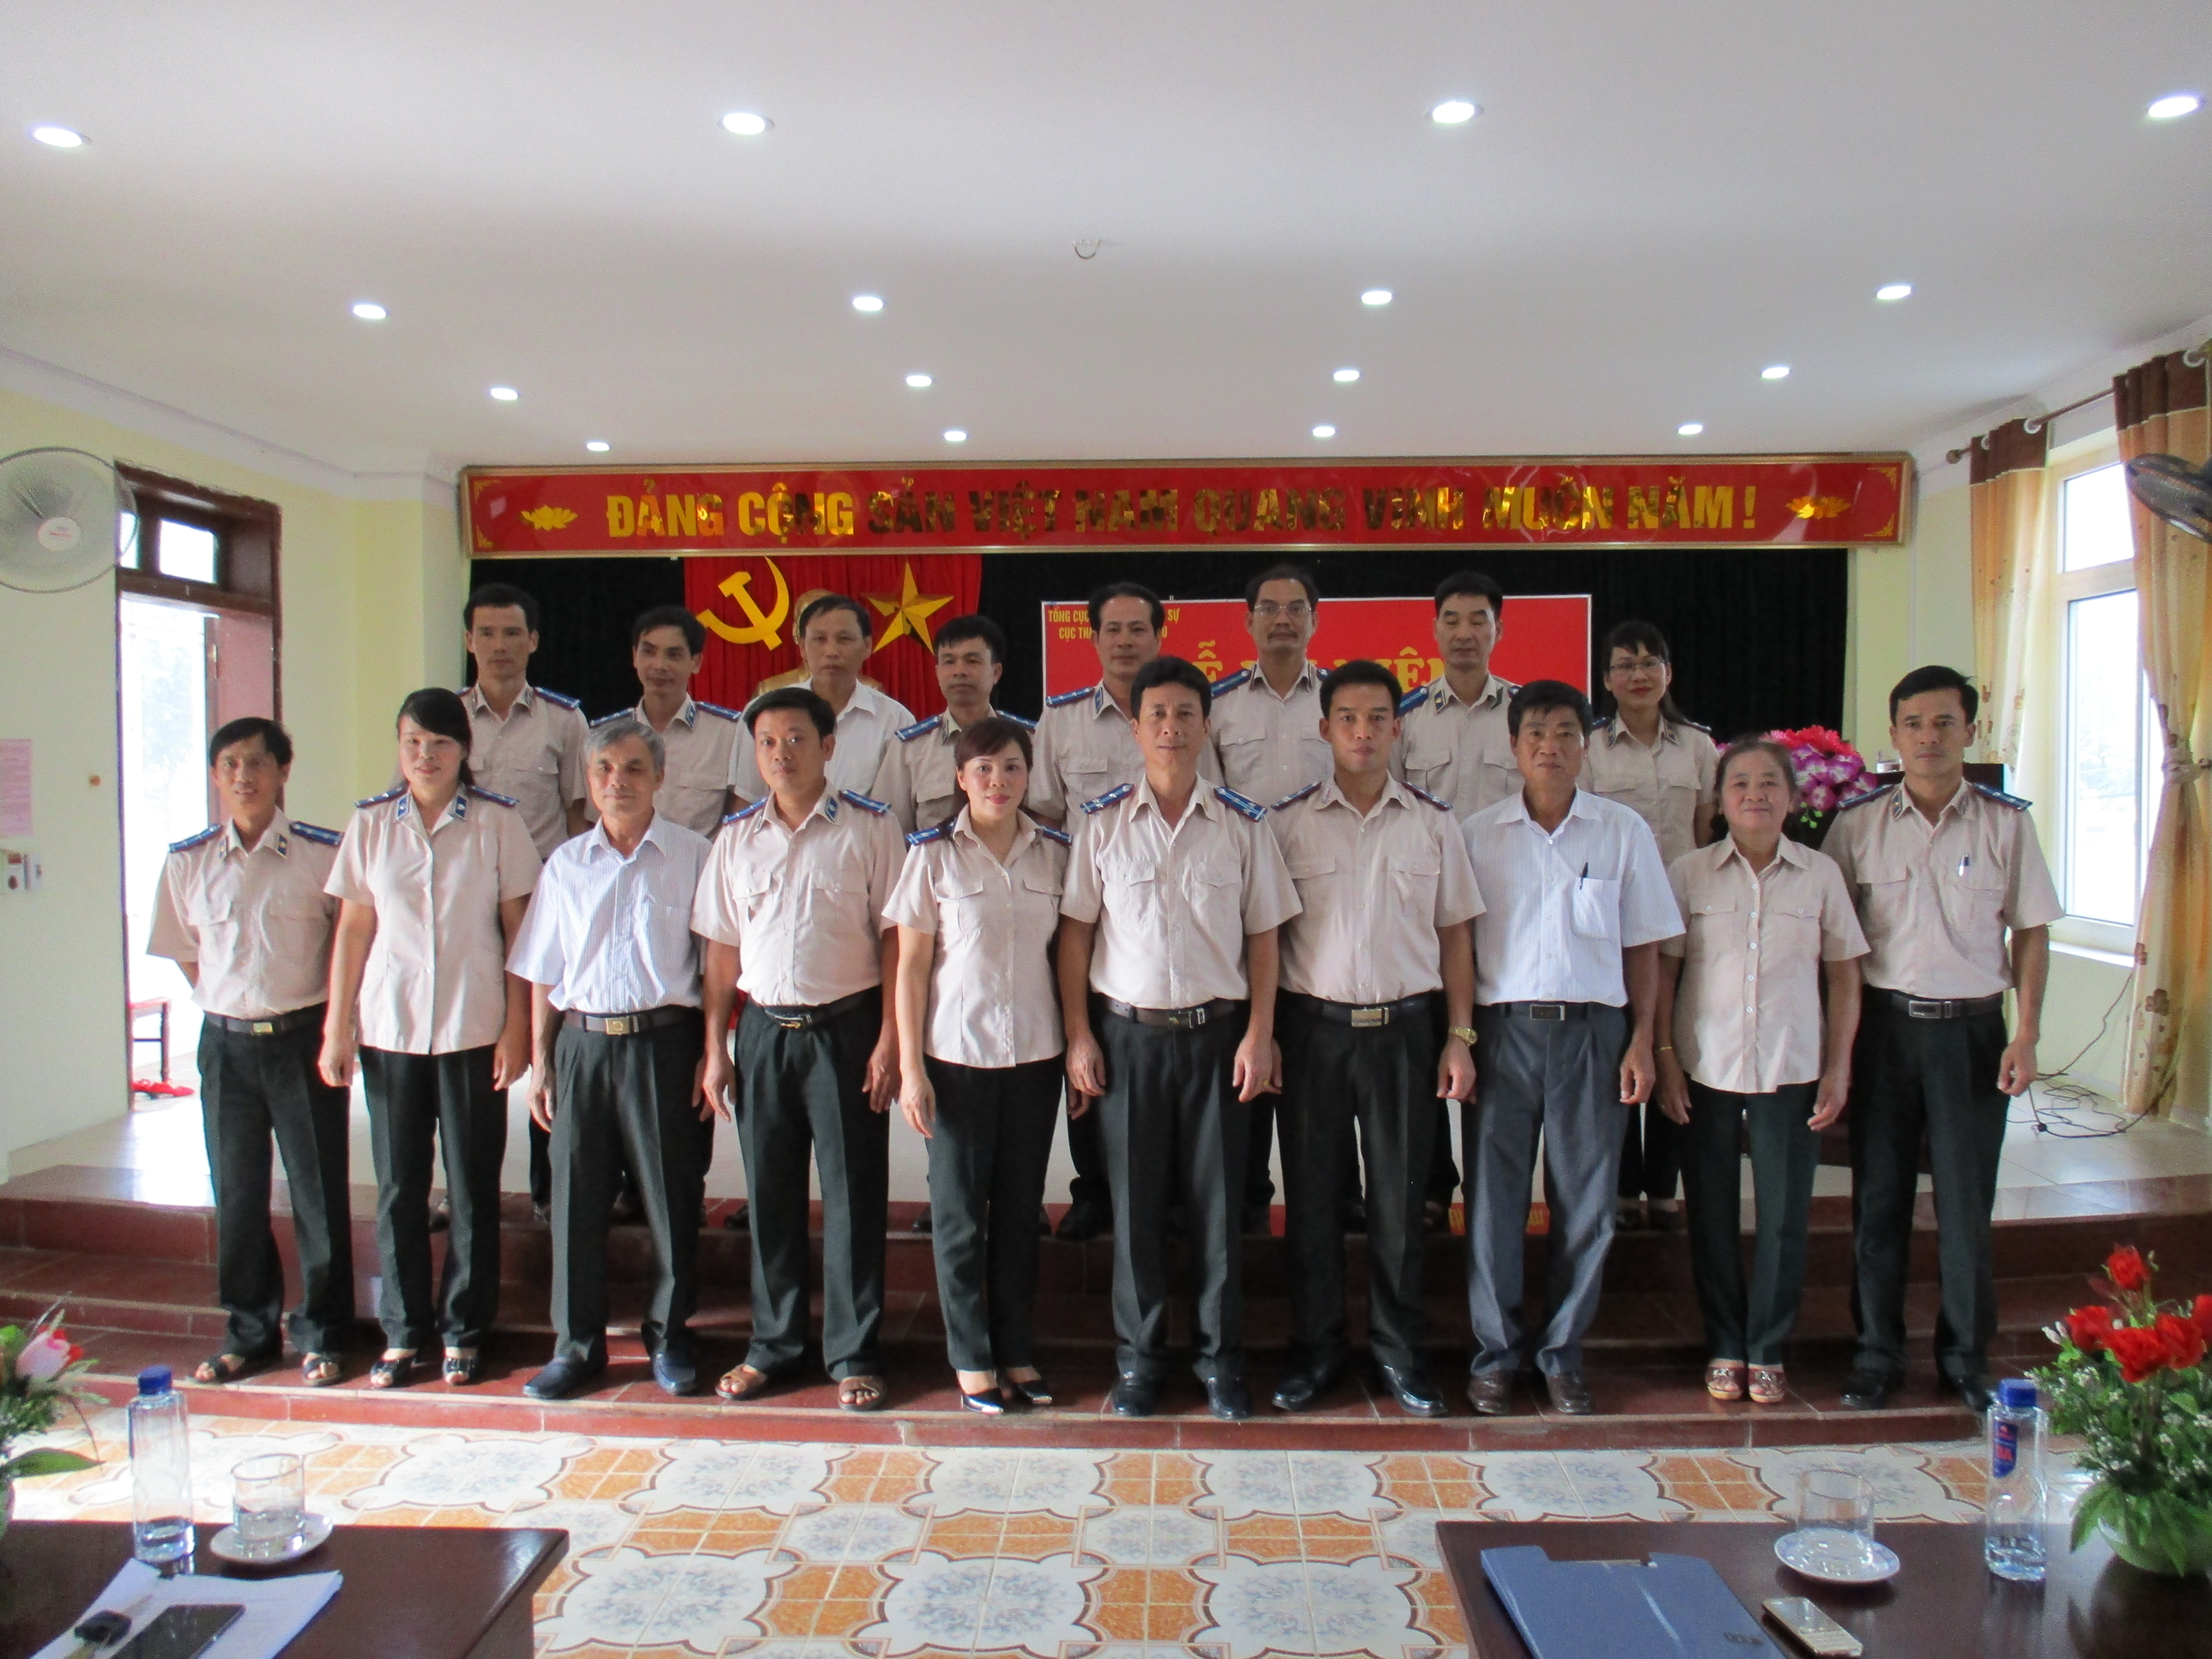 Cục Thi hành án dân sự tỉnh Lai Châu tổ chức Lễ Kỷ niệm 70 năm Ngày truyền thống Thi hành án dân sự (19/07/1946 - 19/07/2016)